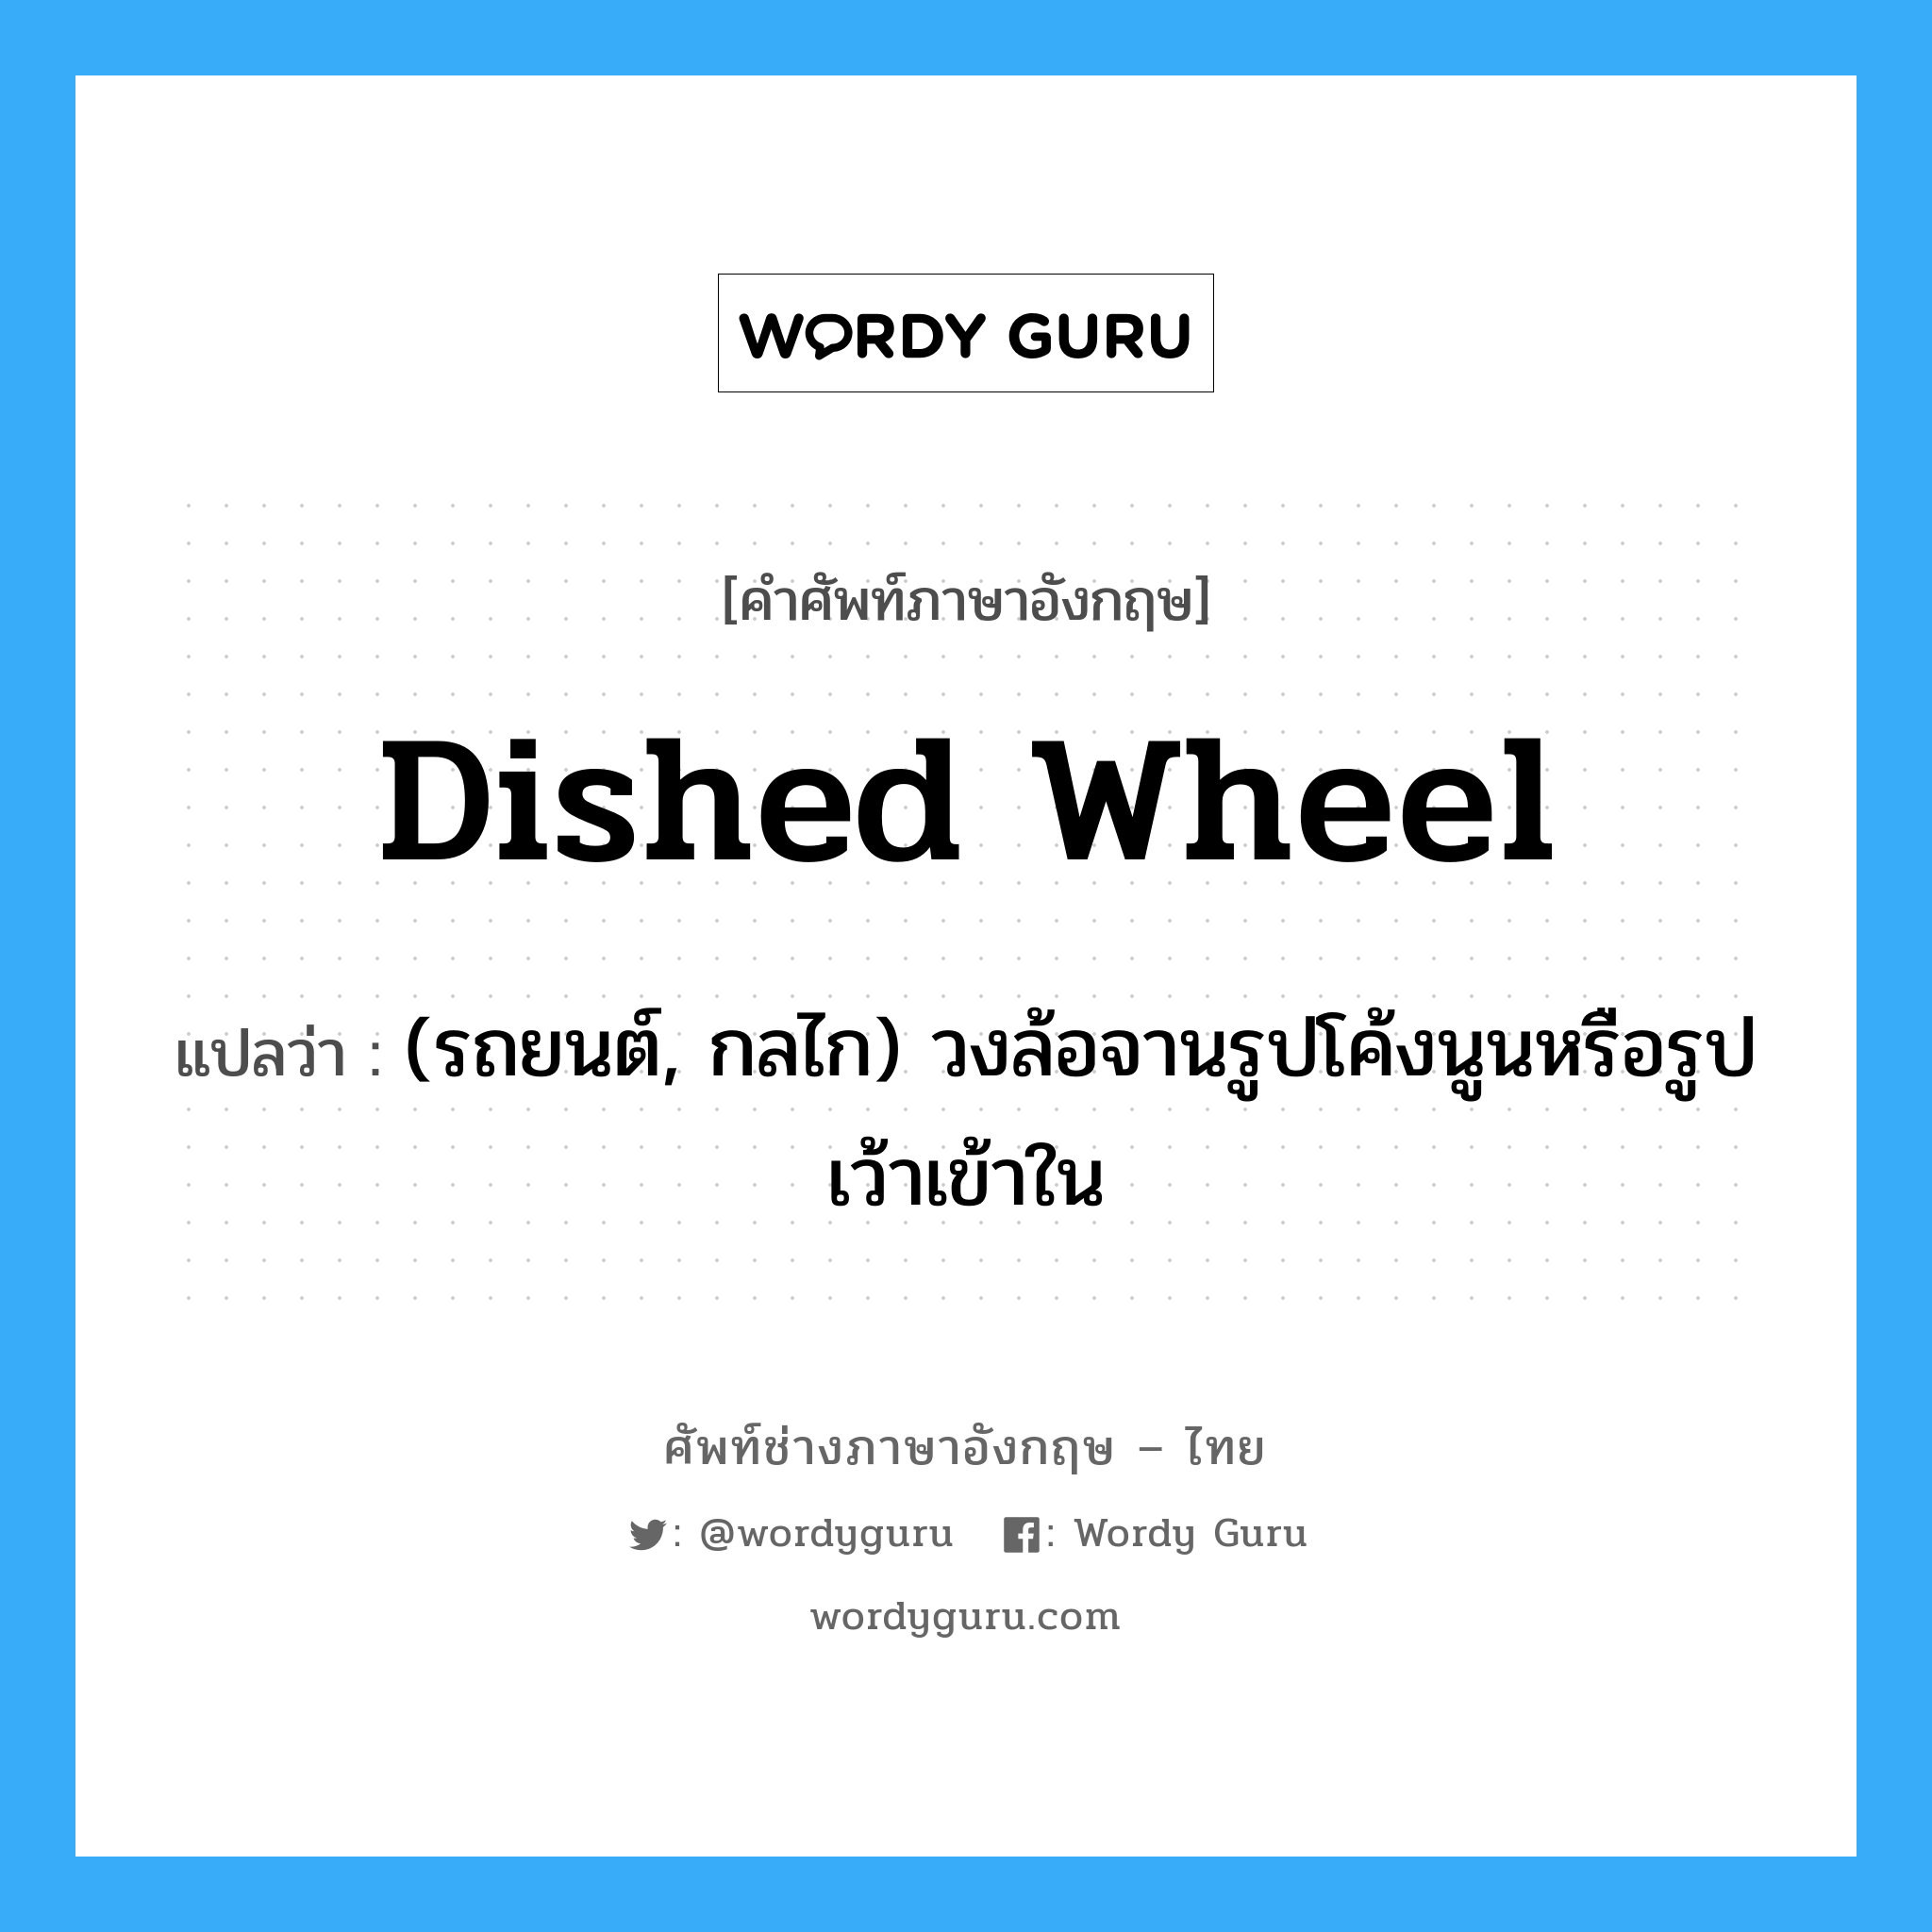 dished wheel แปลว่า?, คำศัพท์ช่างภาษาอังกฤษ - ไทย dished wheel คำศัพท์ภาษาอังกฤษ dished wheel แปลว่า (รถยนต์, กลไก) วงล้อจานรูปโค้งนูนหรือรูปเว้าเข้าใน